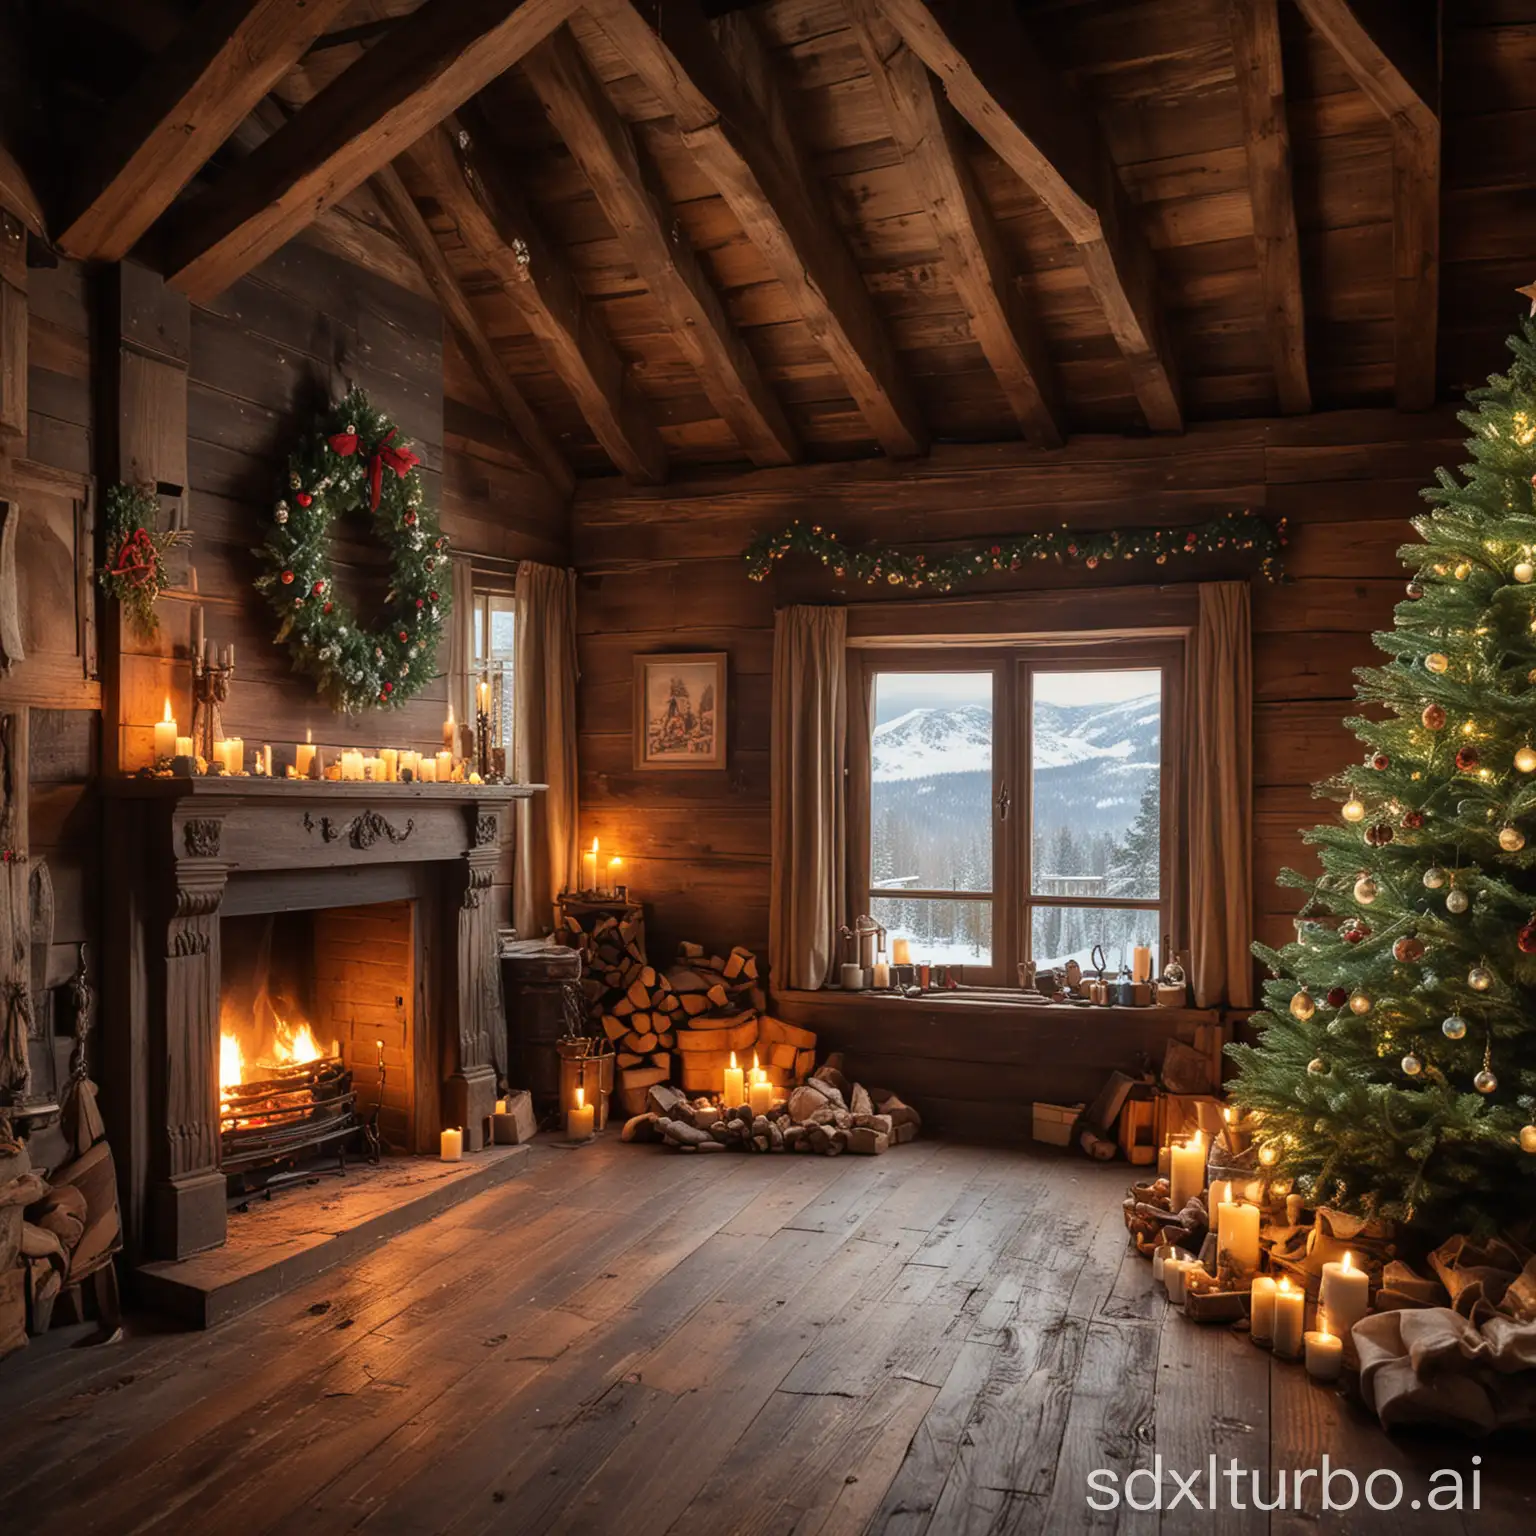 Romantisches Bild einer alten möblierten Stube aus Holz mit einem chemine mit einem Christbaum auf dem sich der Schmuck befindet und auf dem die Kerzen Brennen, aus dem Fenster sieht man die Weissen berge